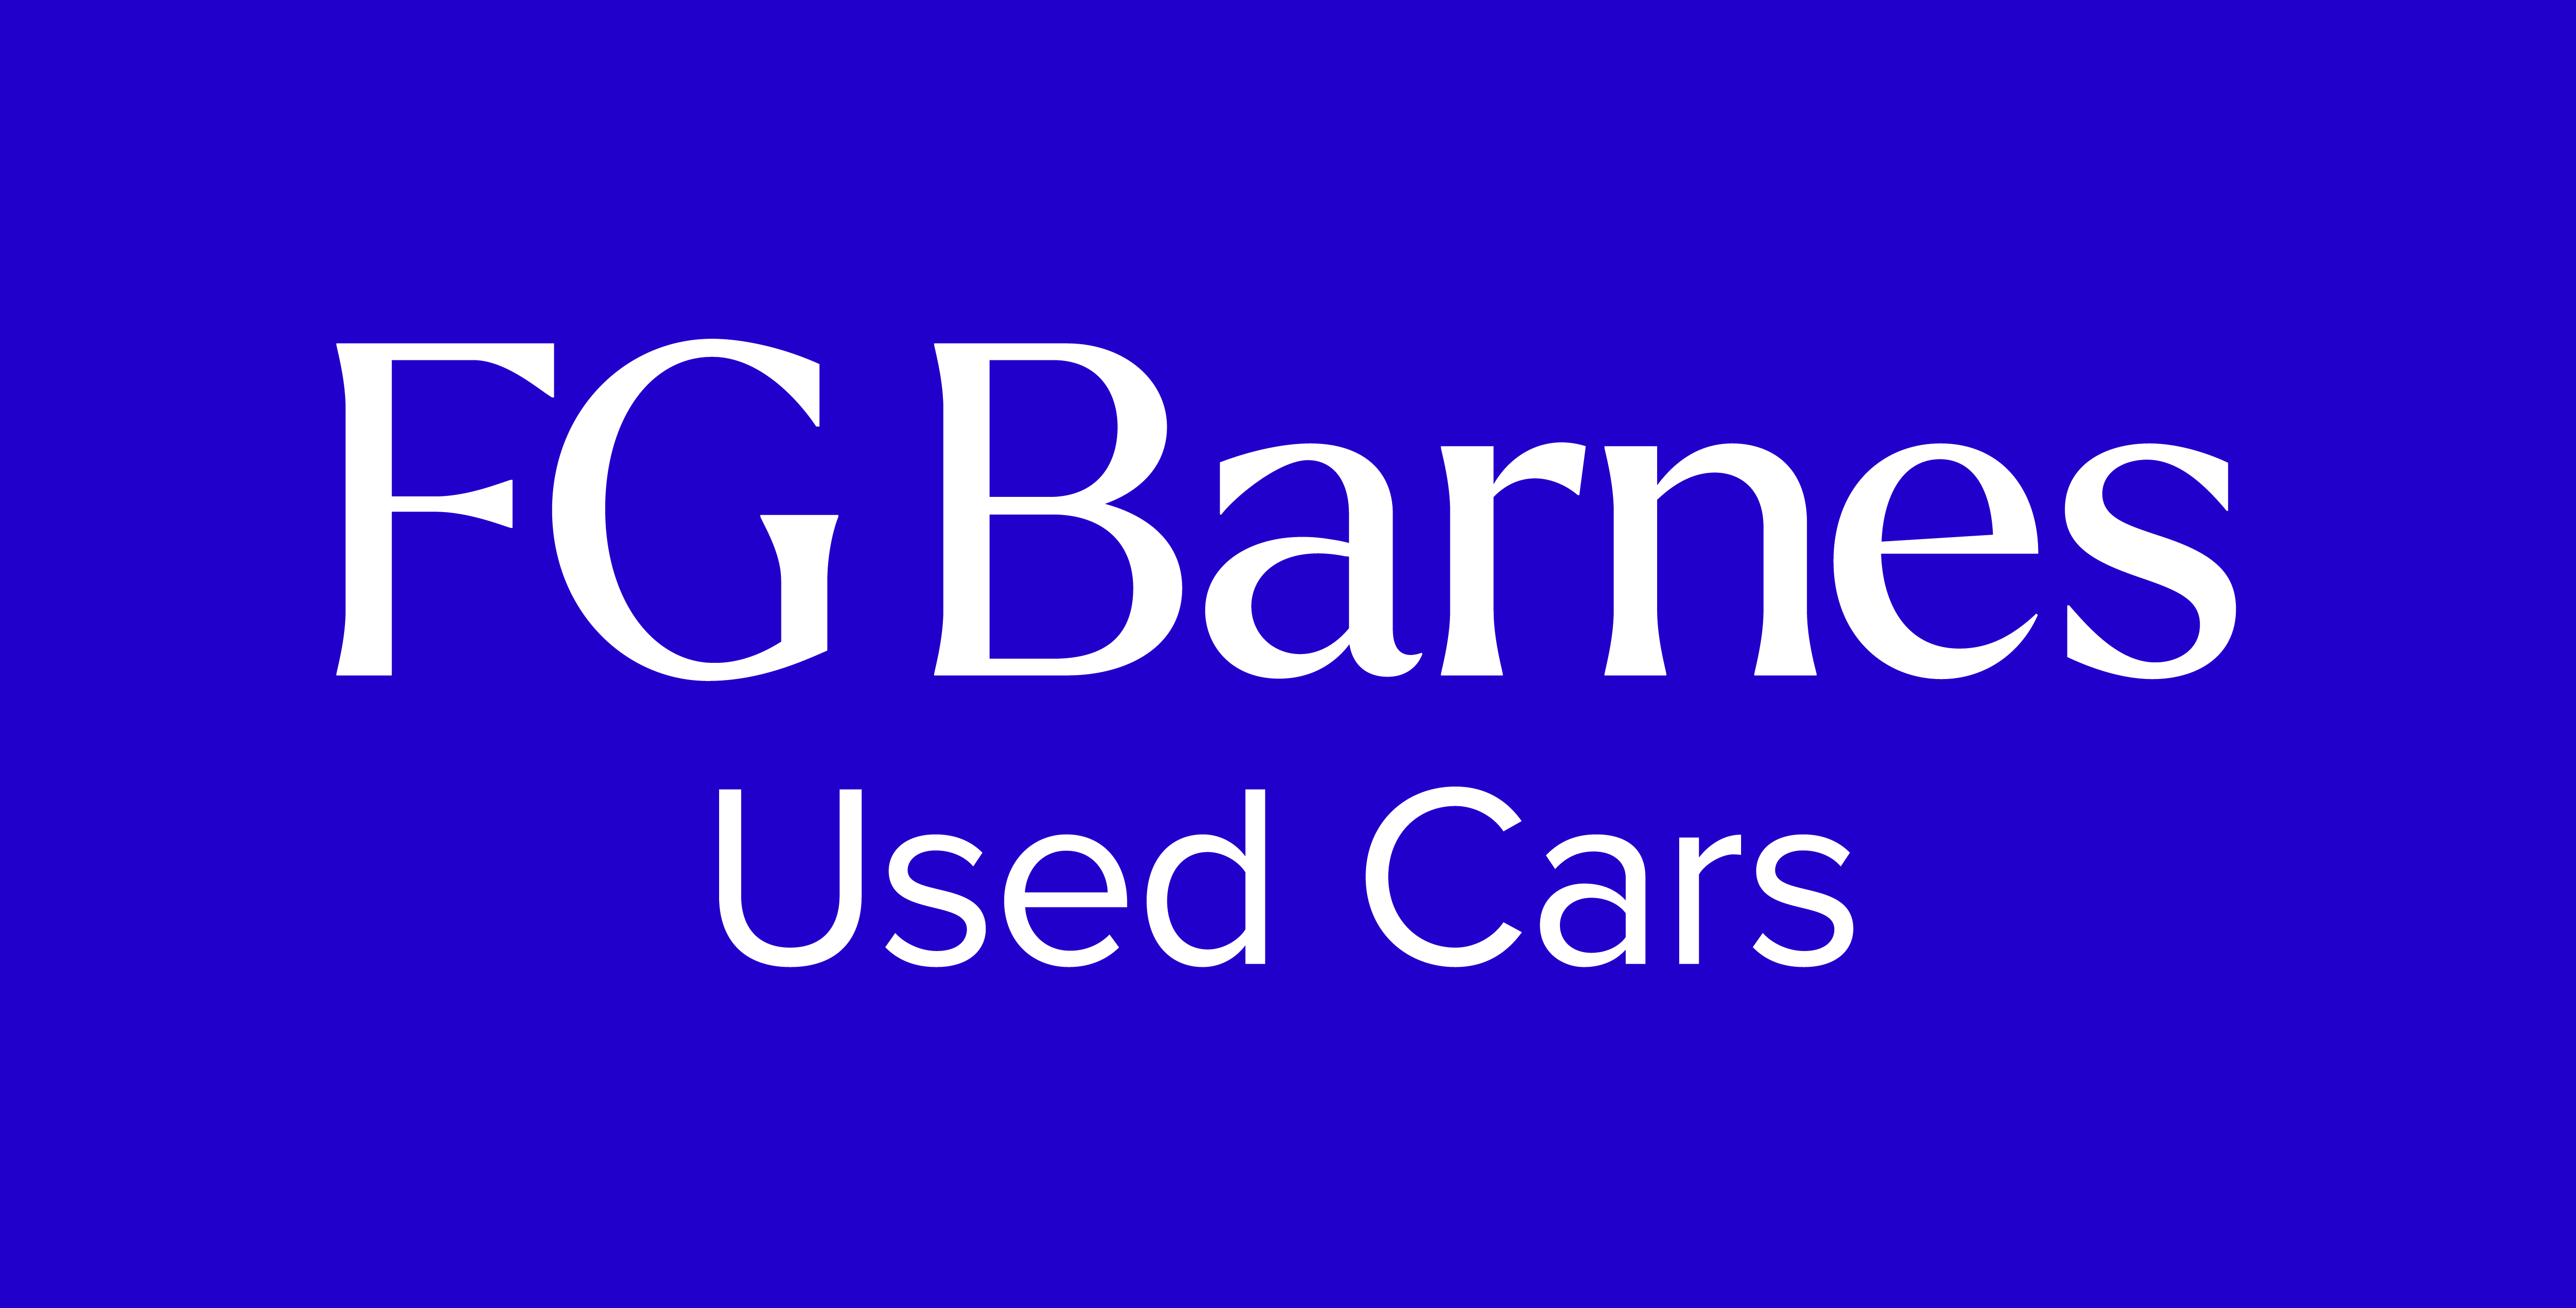 FG Barnes Used Cars Canterbury logo